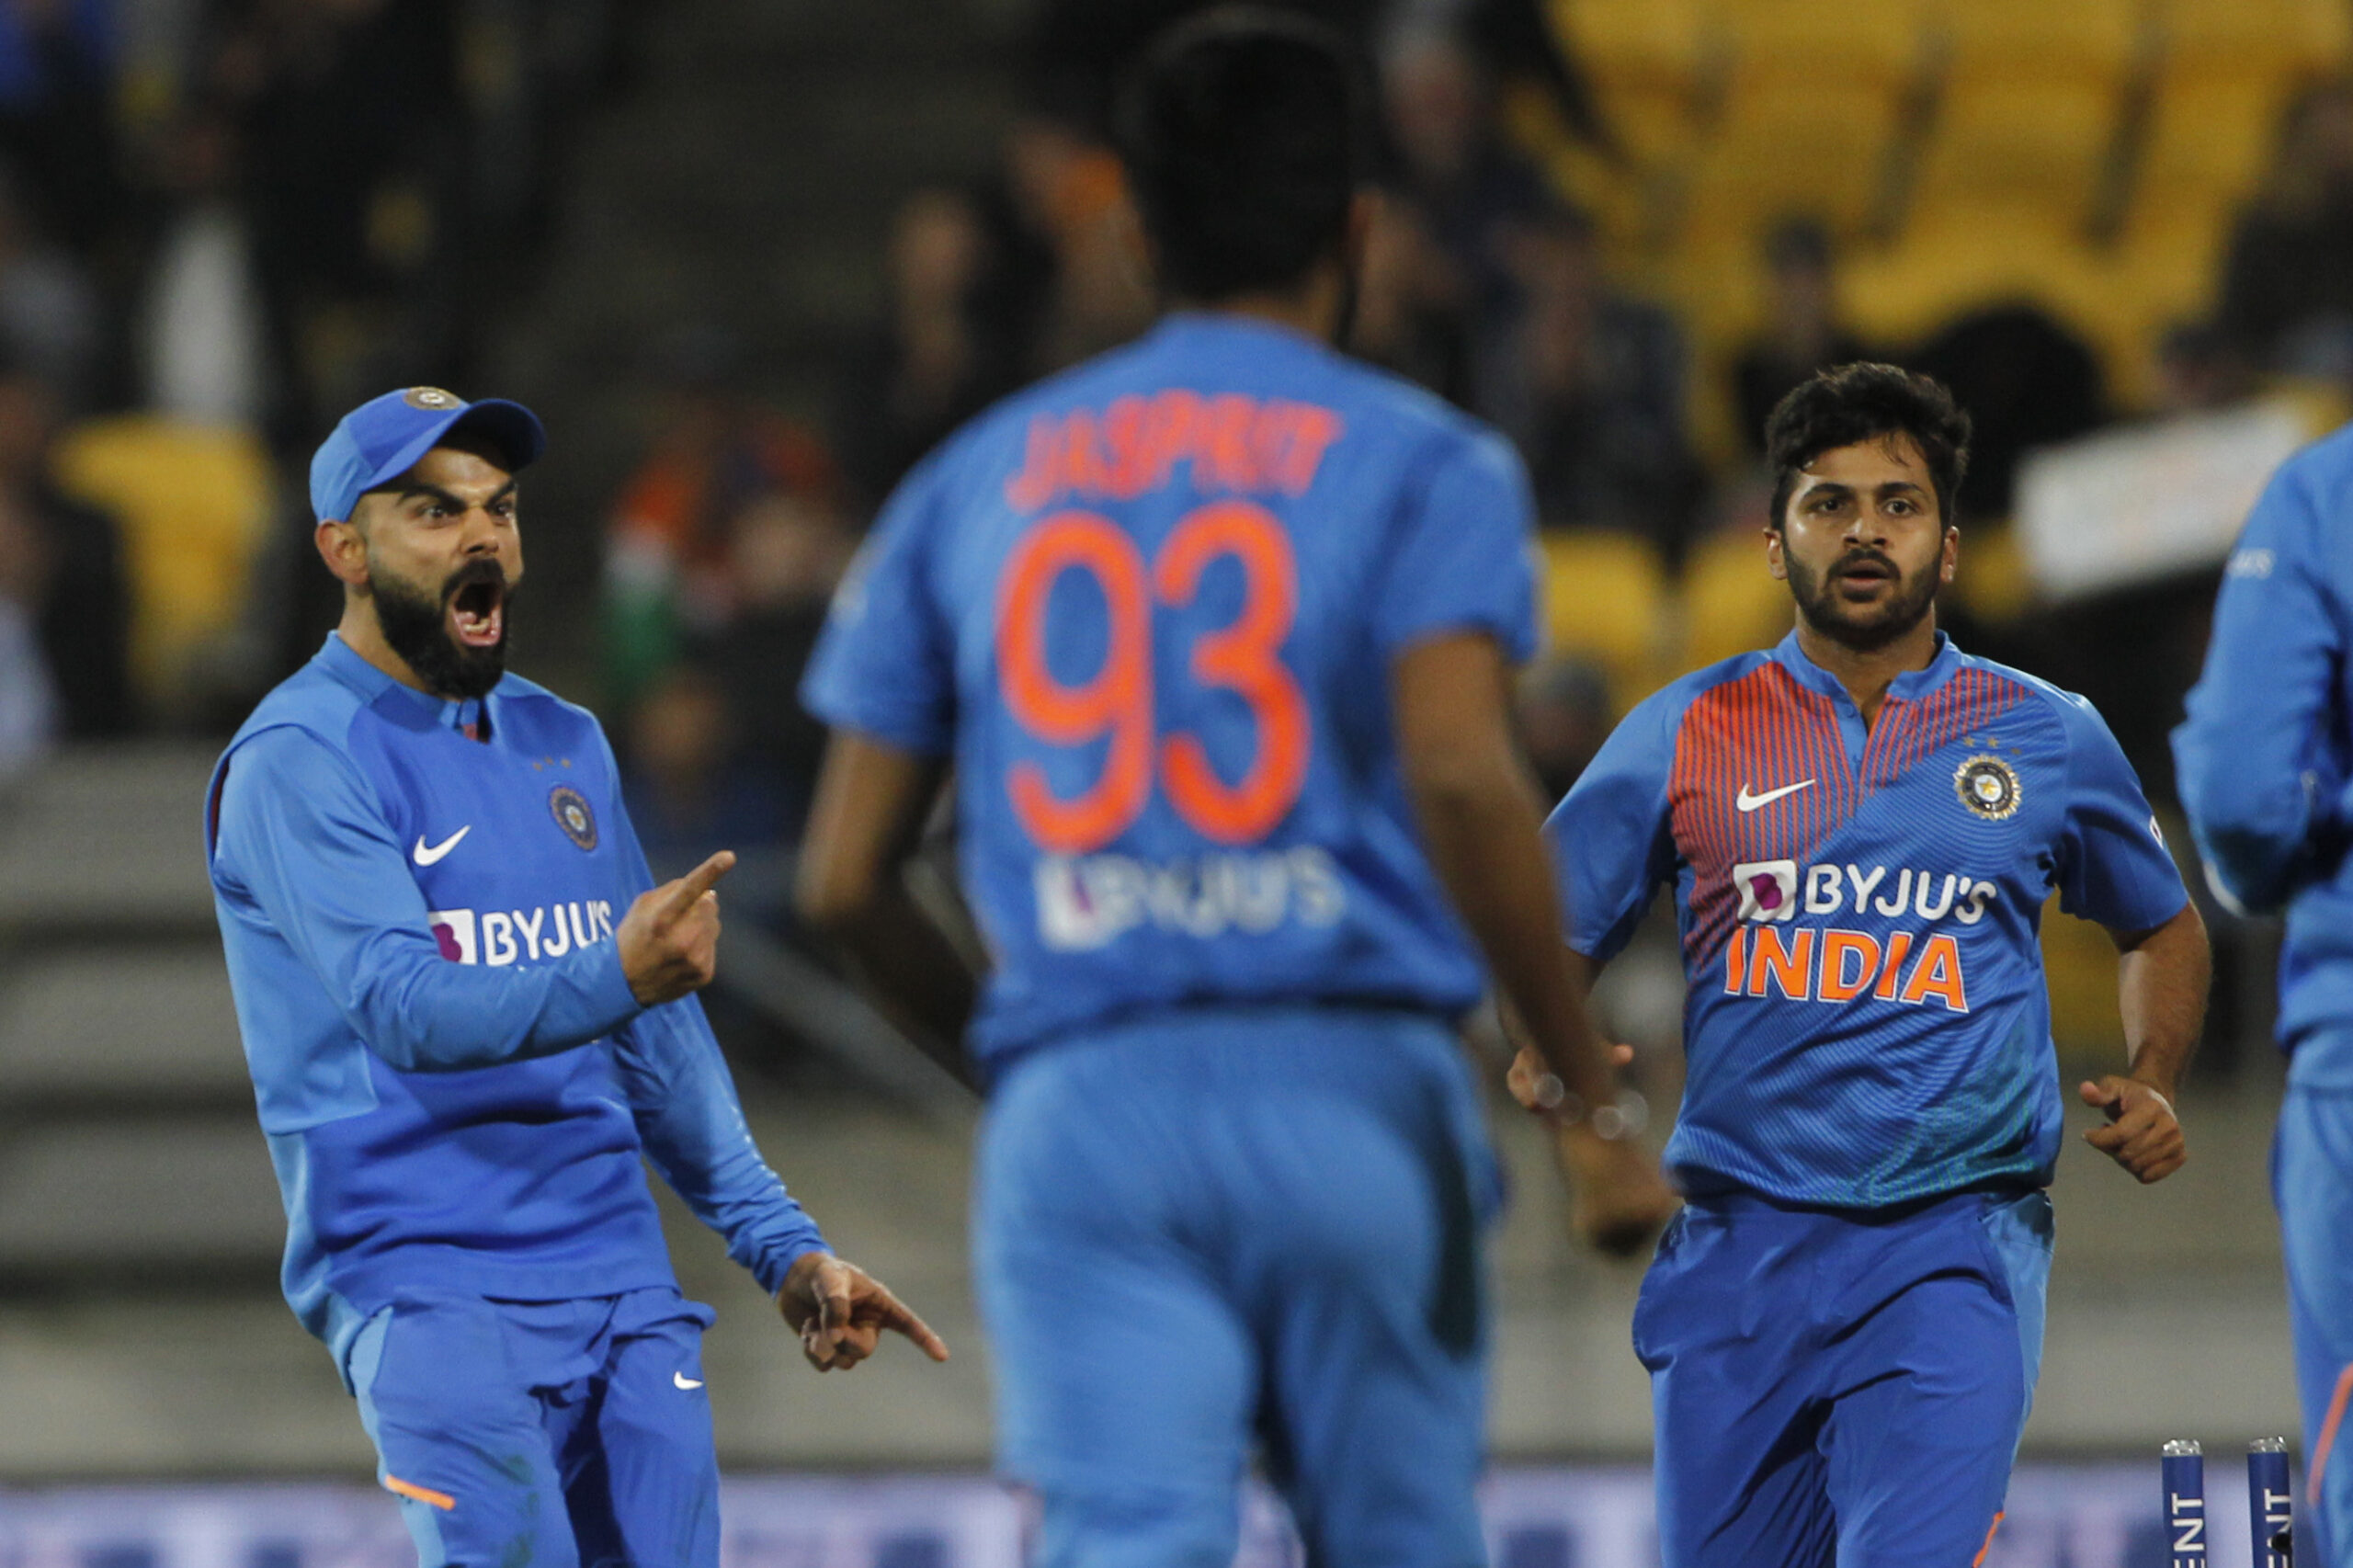 NZ vs IND, चौथा टी-20: सुपर ओवर में फिर न्यूजीलैंड को मिली हार, सोशल मीडिया पर हुई इनकी तारीफ़ 5